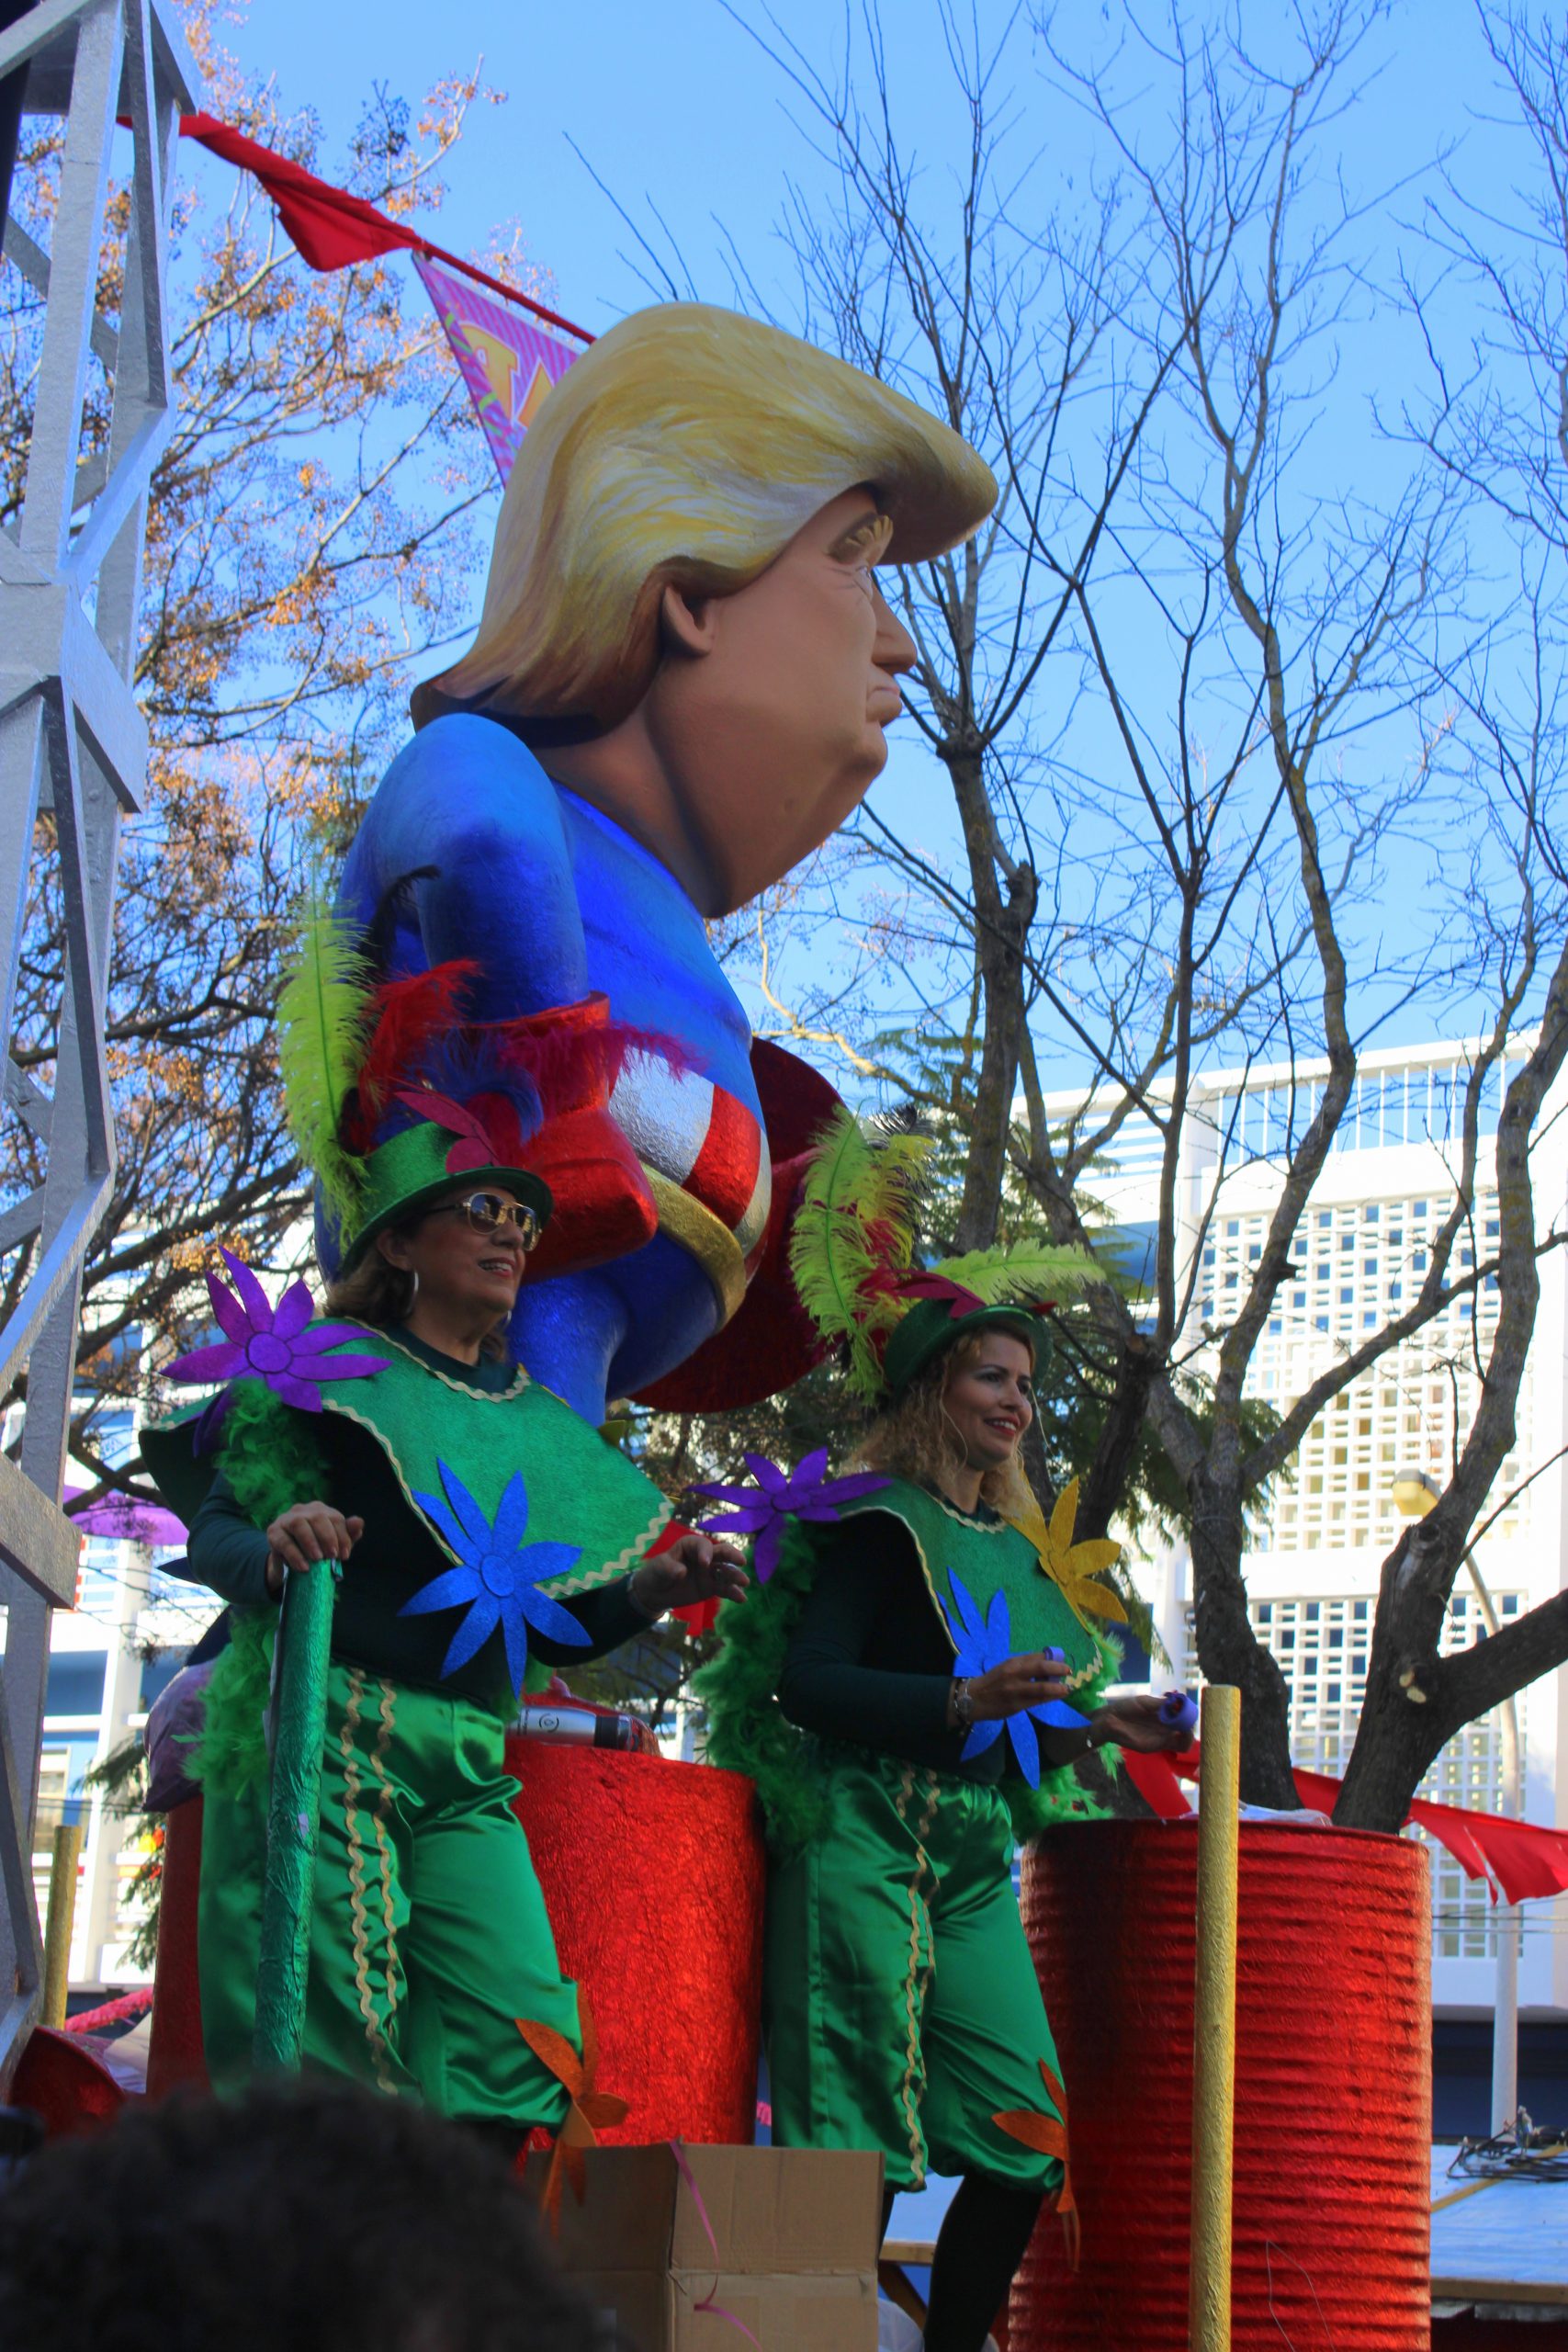 Carnaval (Carnaval) dans le sud du Portugal : Loule